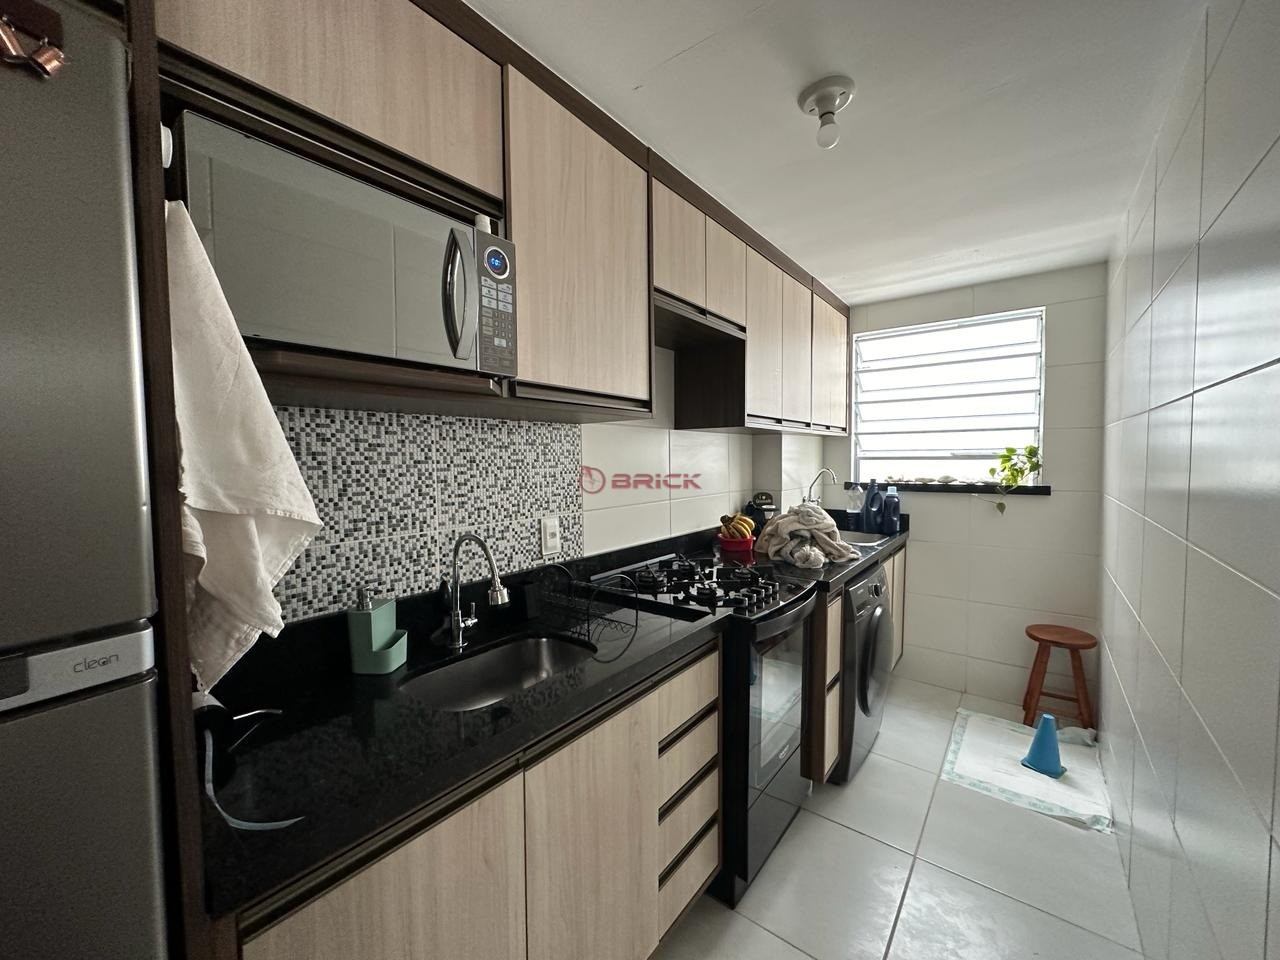 Apartamento à venda em Pimenteiras, Teresópolis - RJ - Foto 7